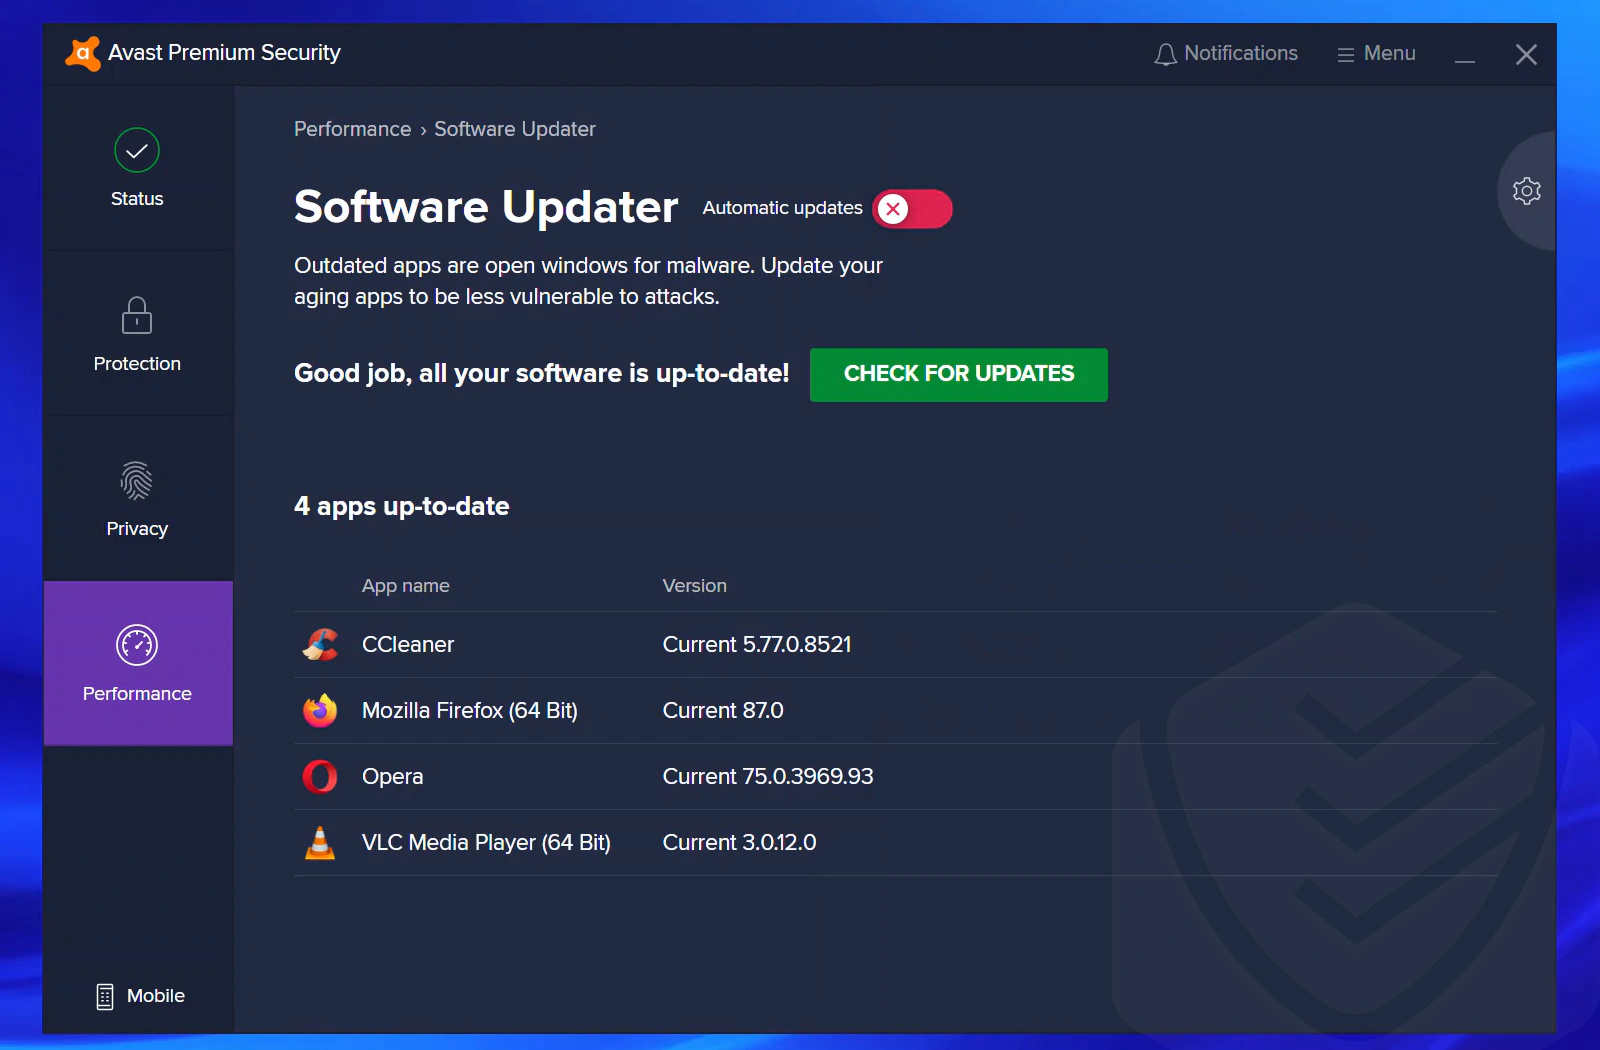 
Interfaccia del Software Updater di Avast